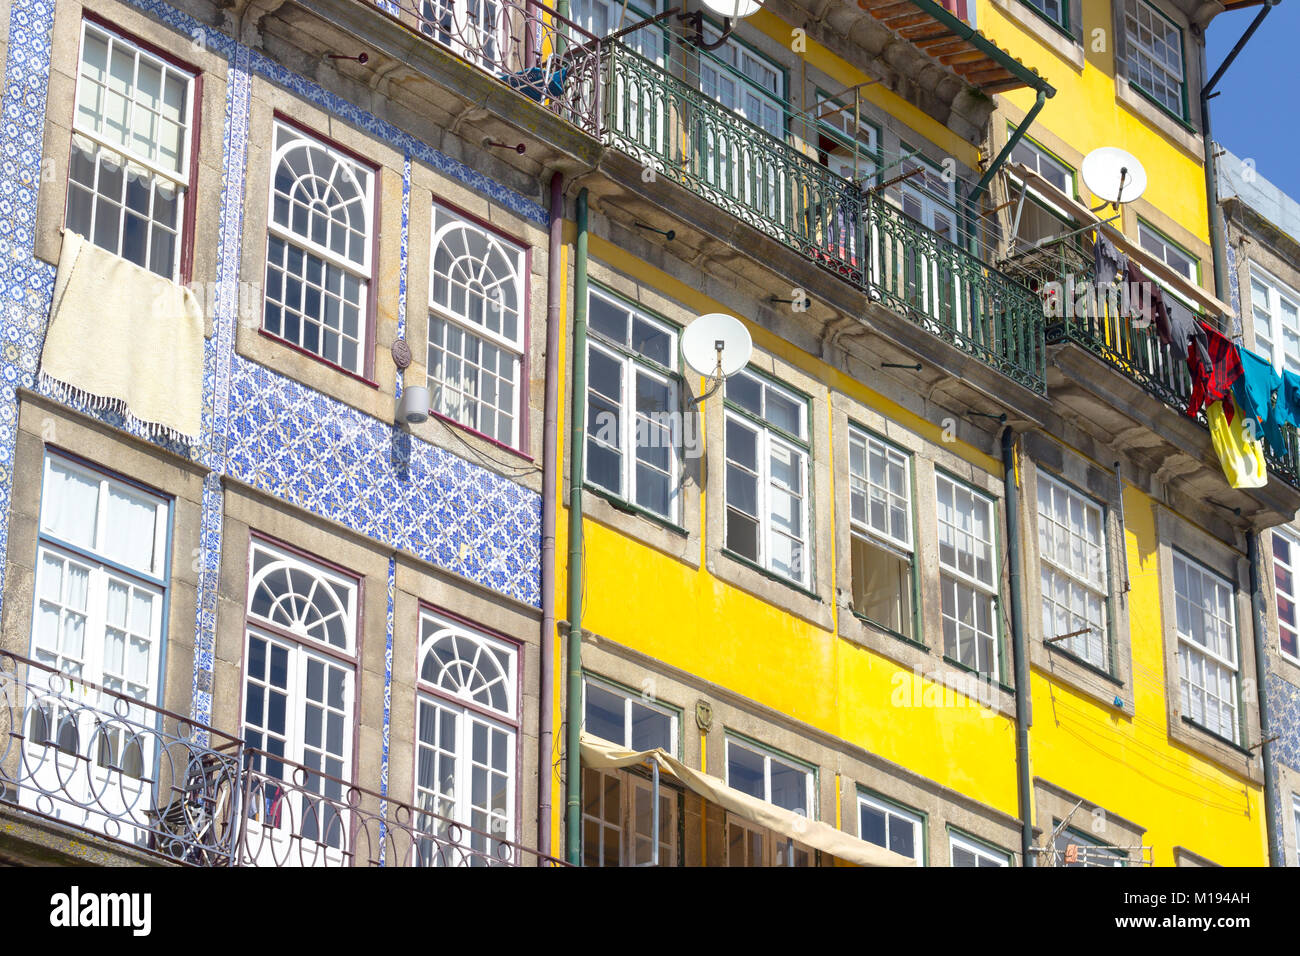 Façade de maison coloré au Portugal Banque D'Images